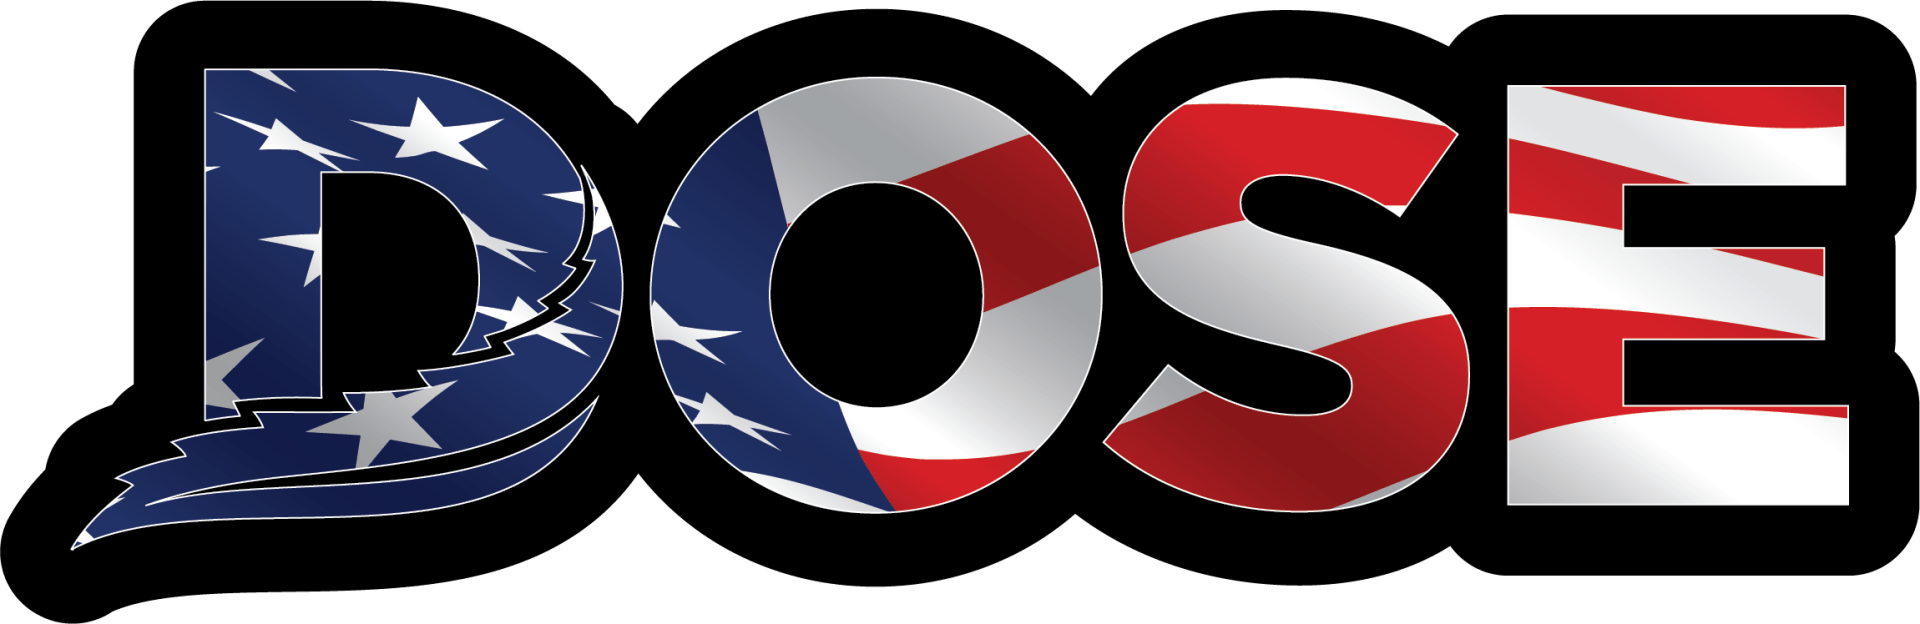 Dose_USA_logo